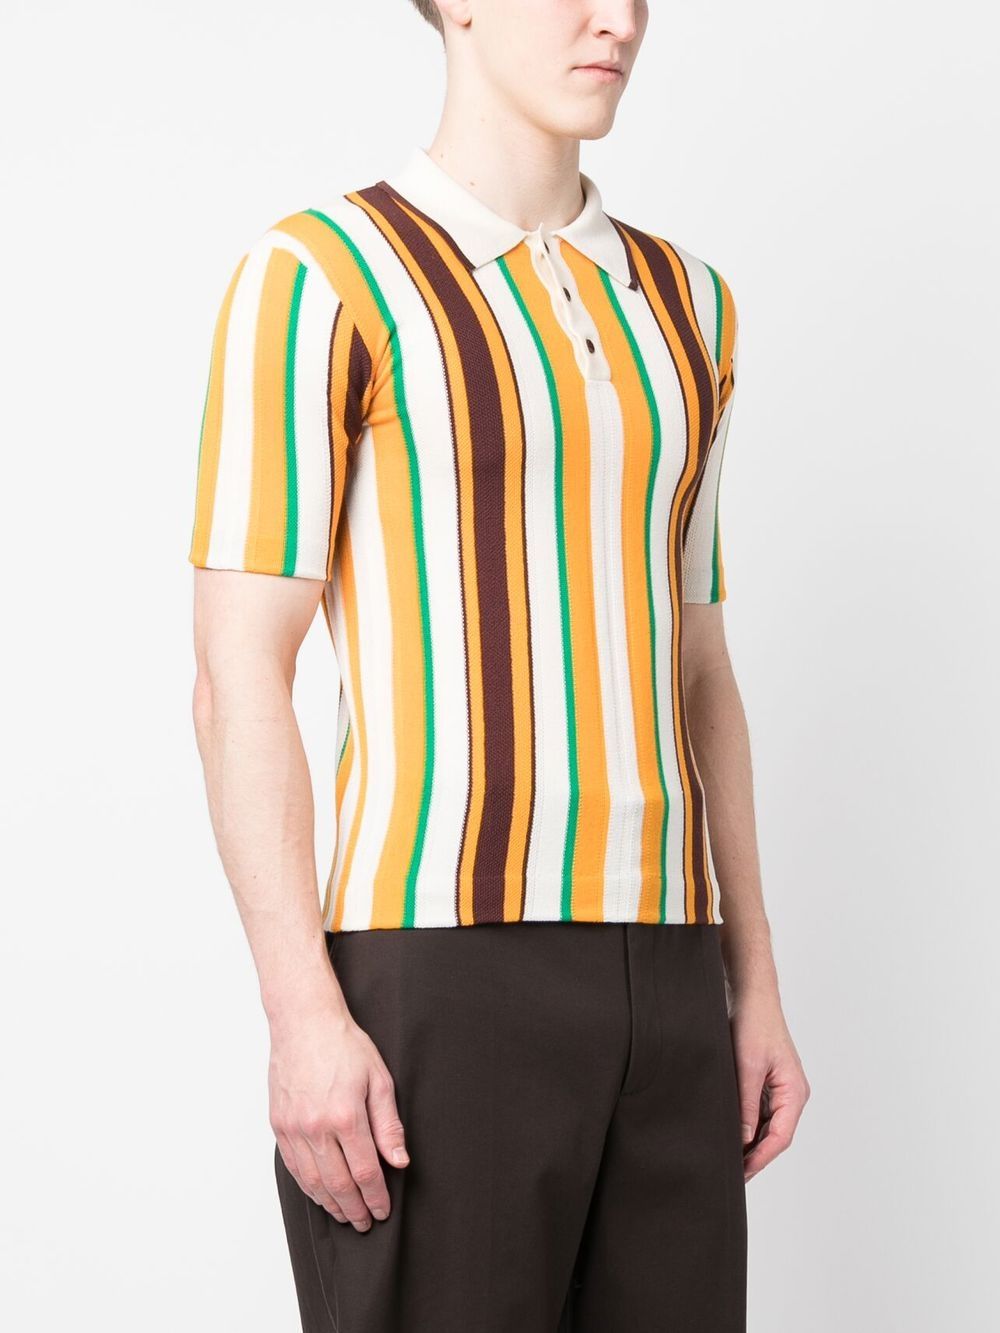 Wales Bonner WALES BONNER- Optimist Striped Cotton Polo Shirt